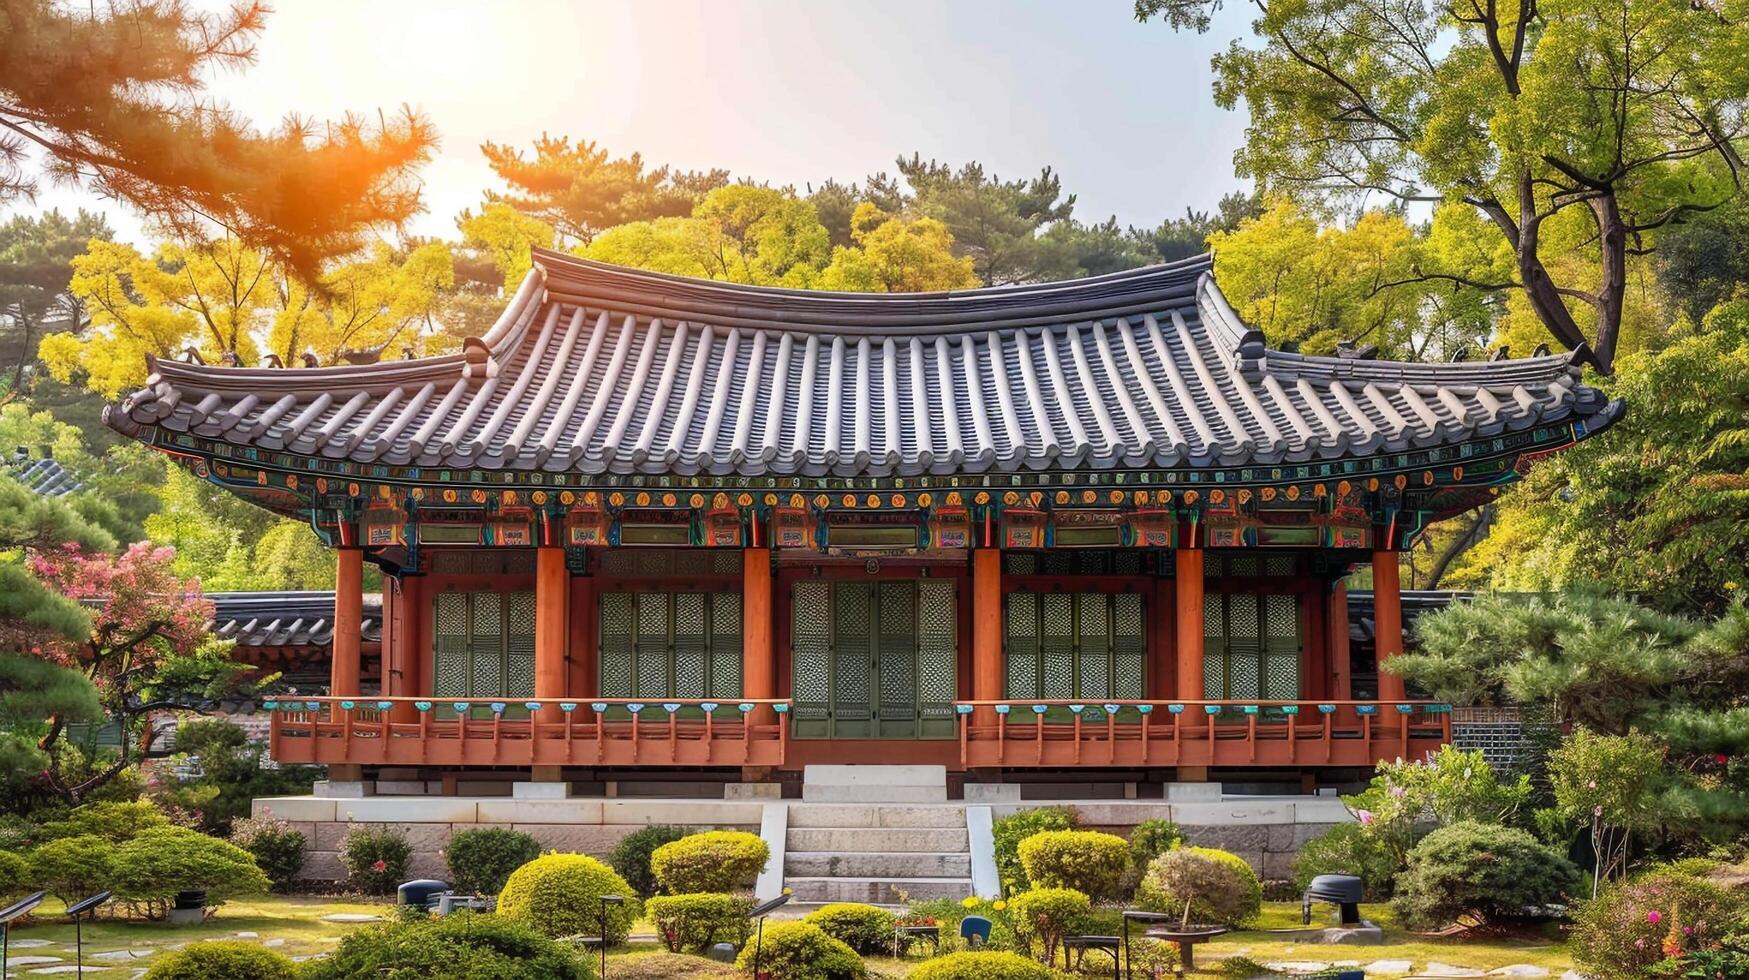 ai gerado tradicional coreano arquitetura antigo estilo sul Coreia do Sul viagem ponto de referência dentro Seul Coréia foto